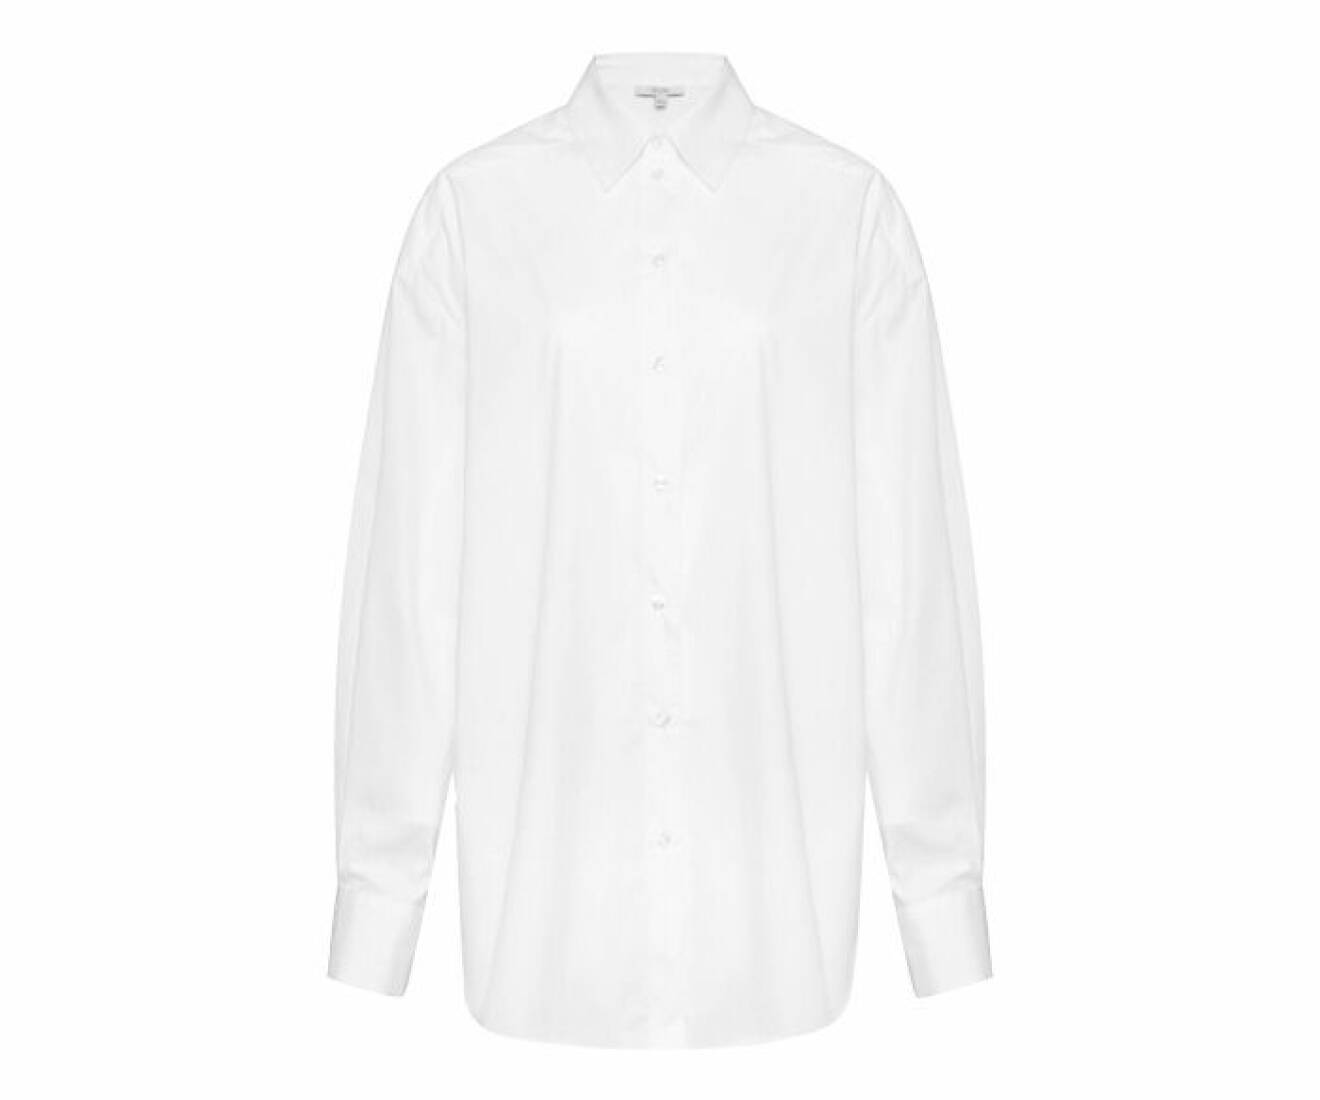 klassisk skjorta i vit nyans gjord i ekologisk bomull från Dagmar